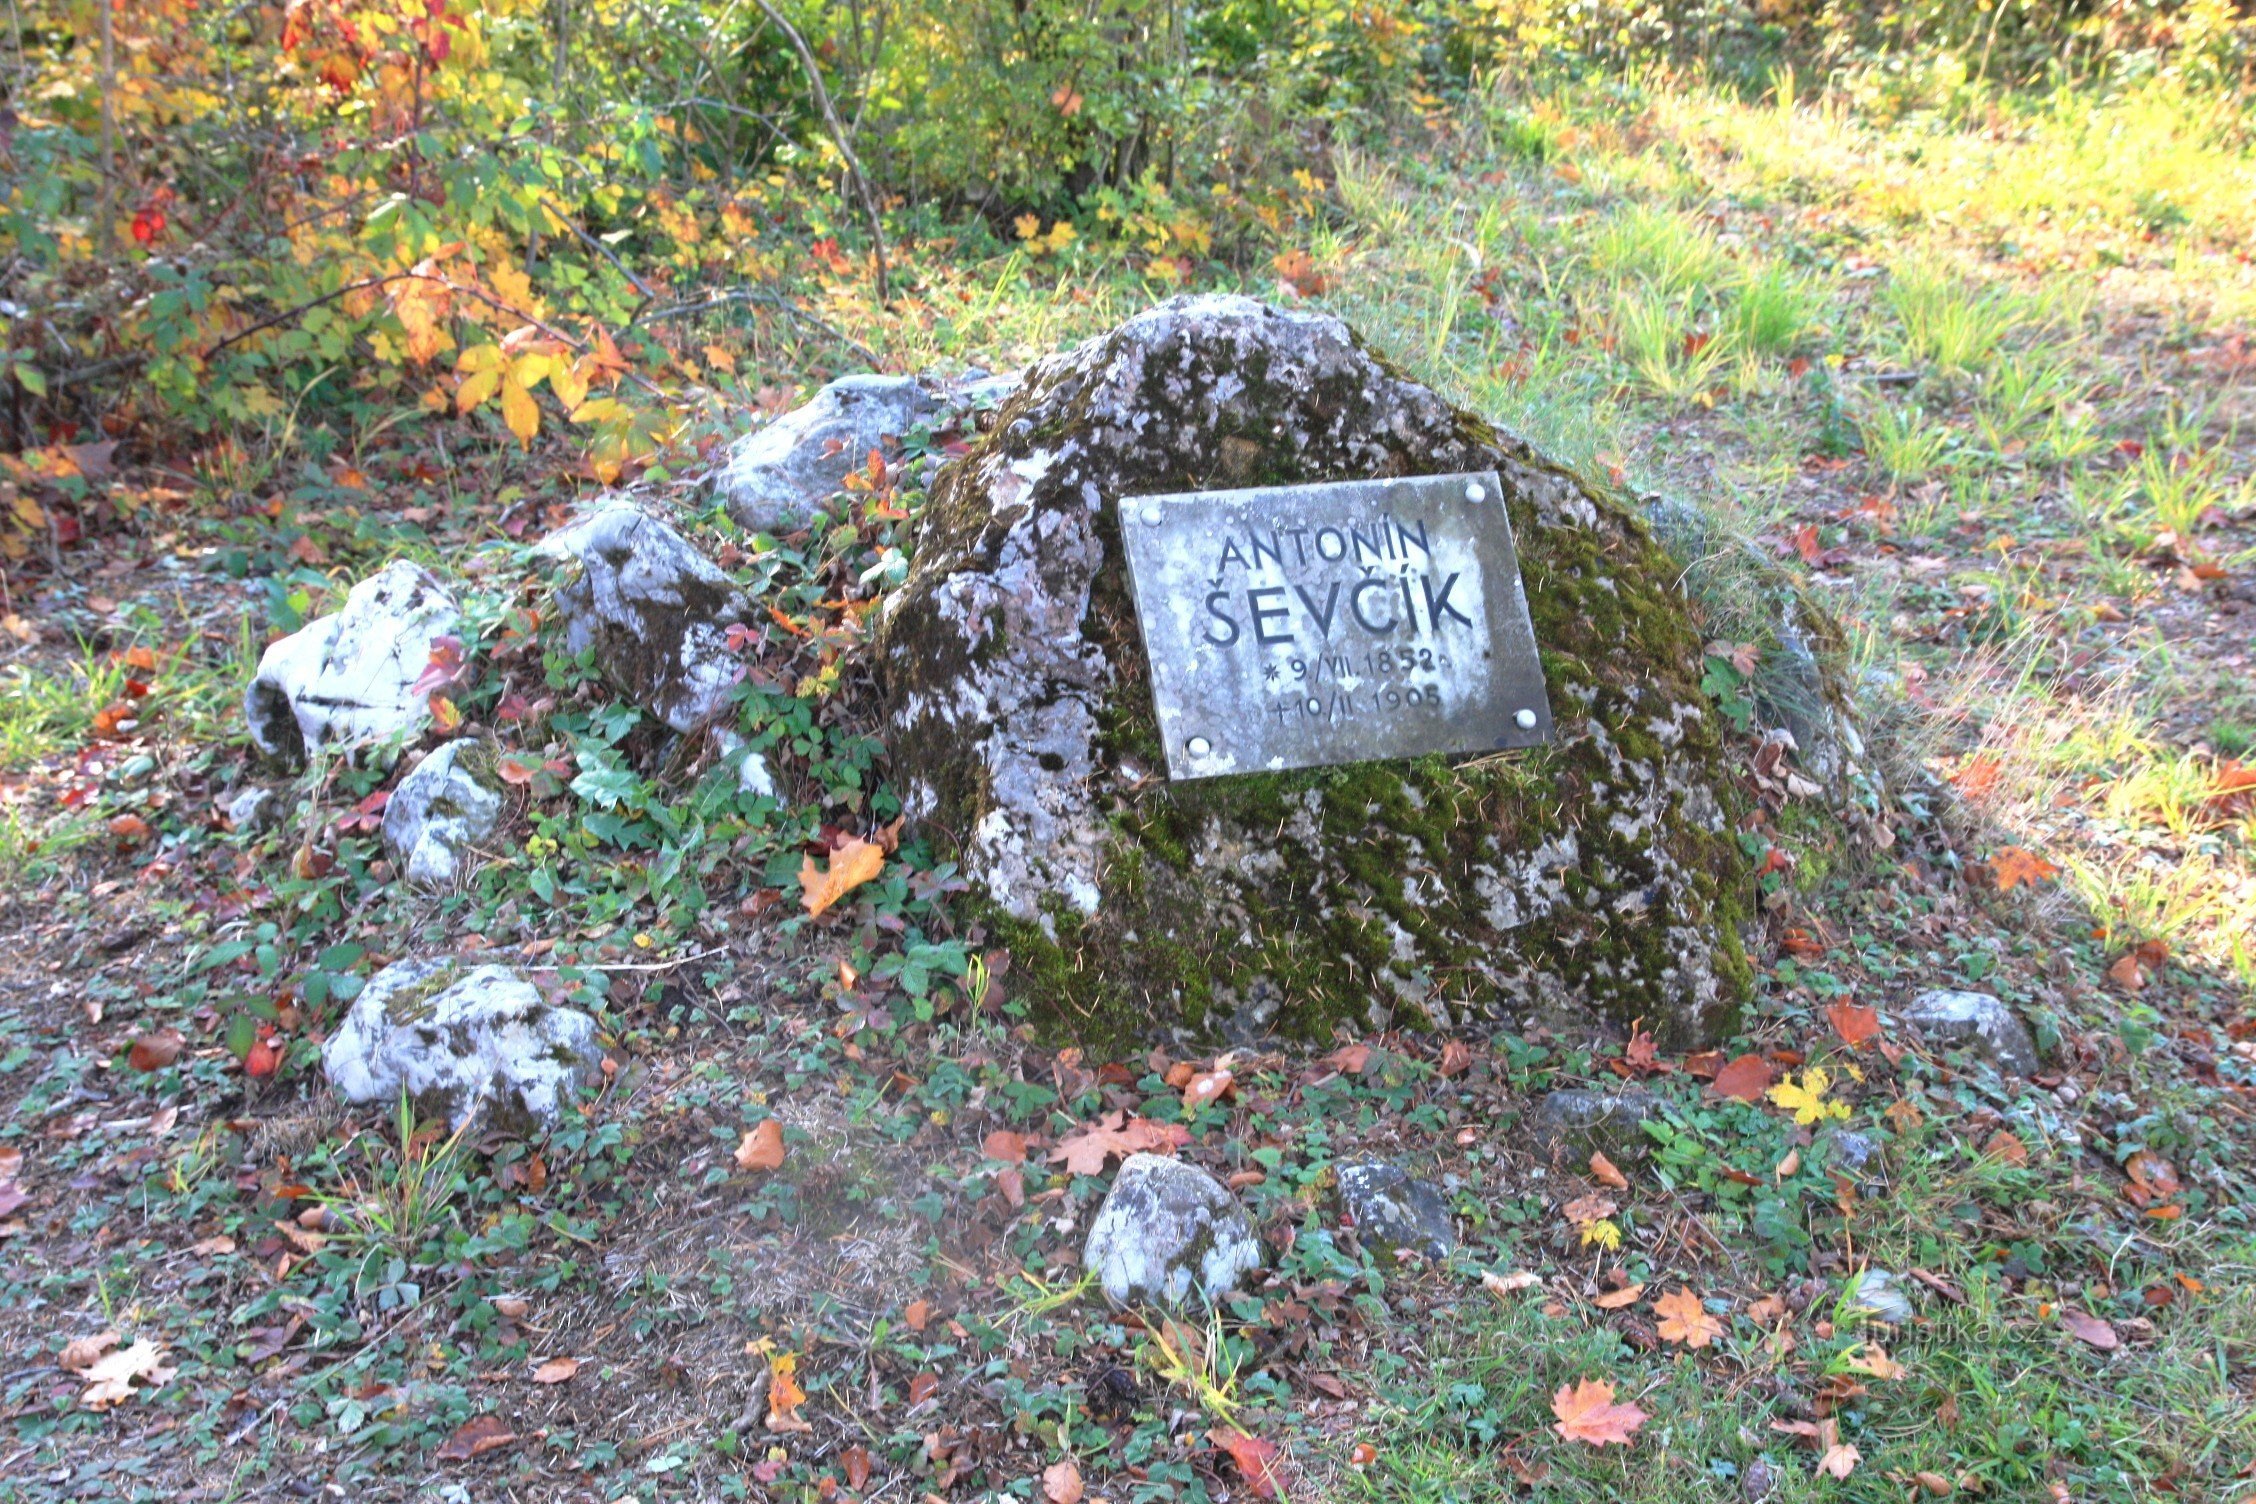 Schatt 的旅程从 A. Ševčík 纪念碑开始